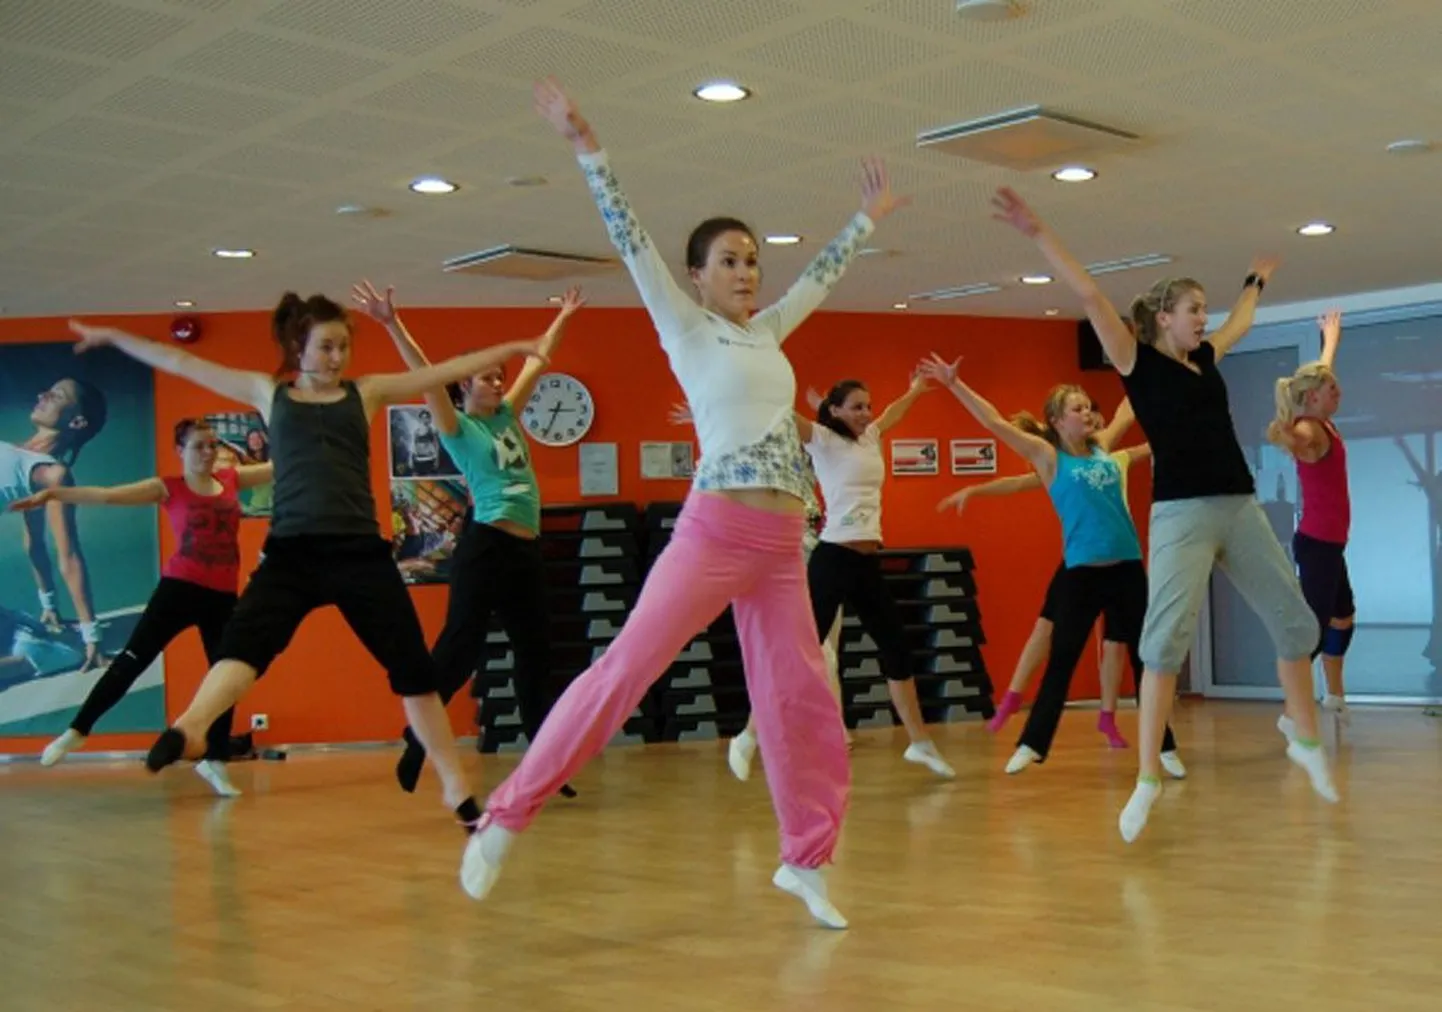 Noored propageerivad läbi tantsu tervislikke eluviise.